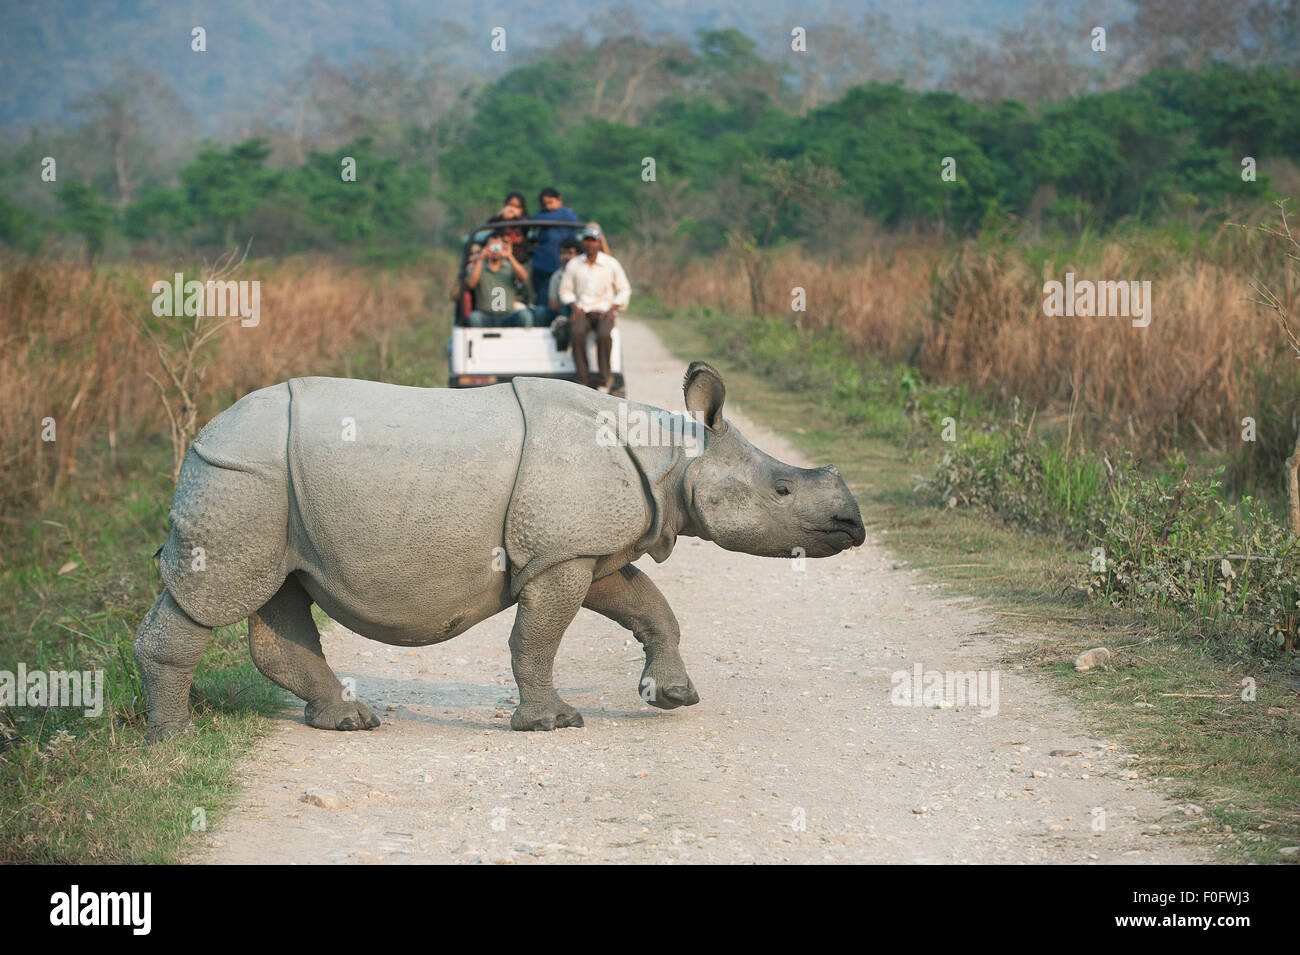 L'image a été tourné dans le parc national de Kaziranga en Inde Banque D'Images